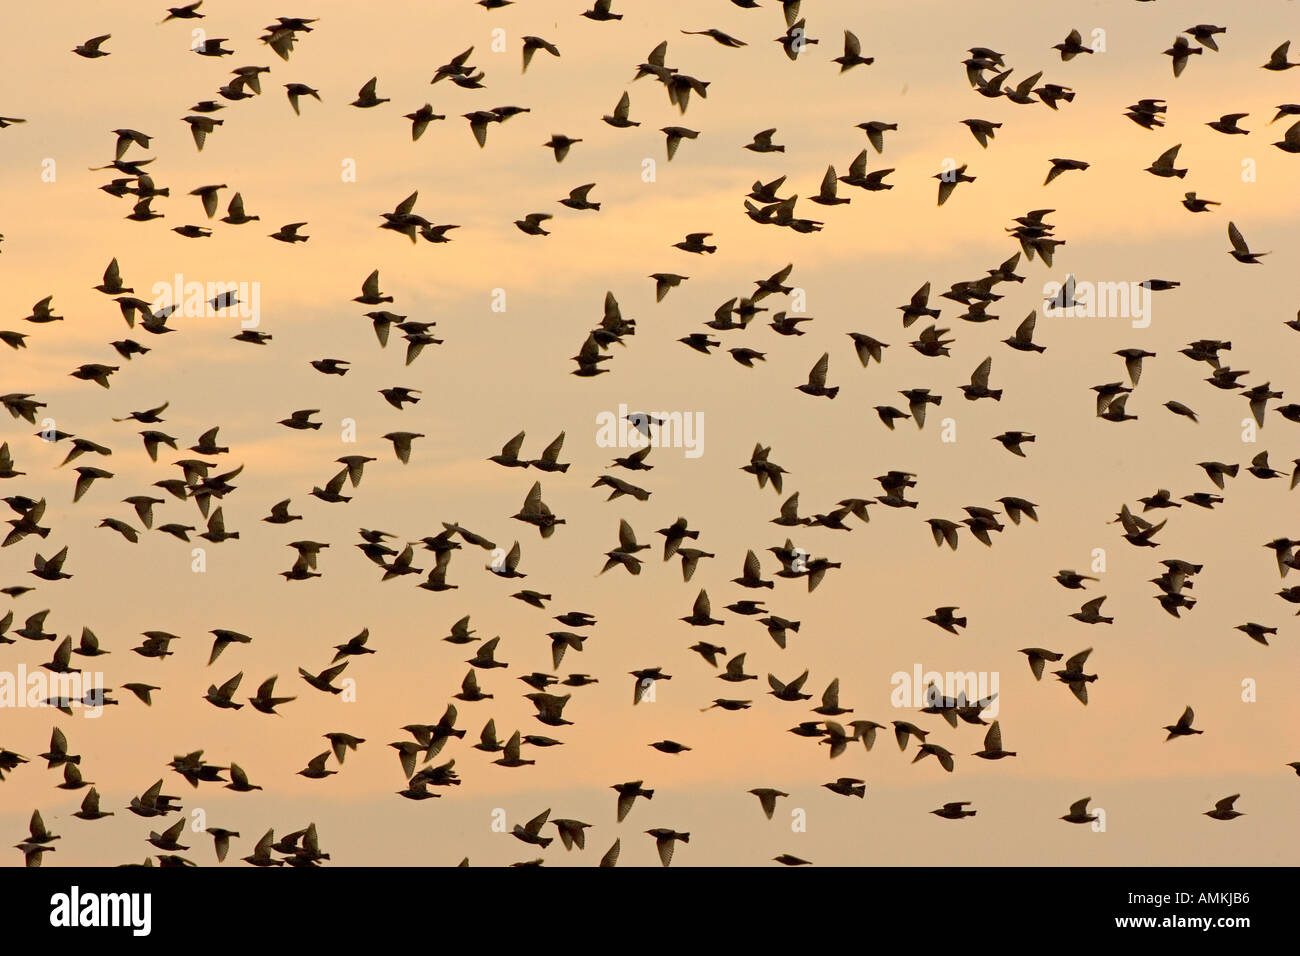 Wandernde Stare am Themse-Mündung Avian Flu Vogelgrippe konnte durch die Migration nach Großbritannien gebracht werden Vögel Stockfoto